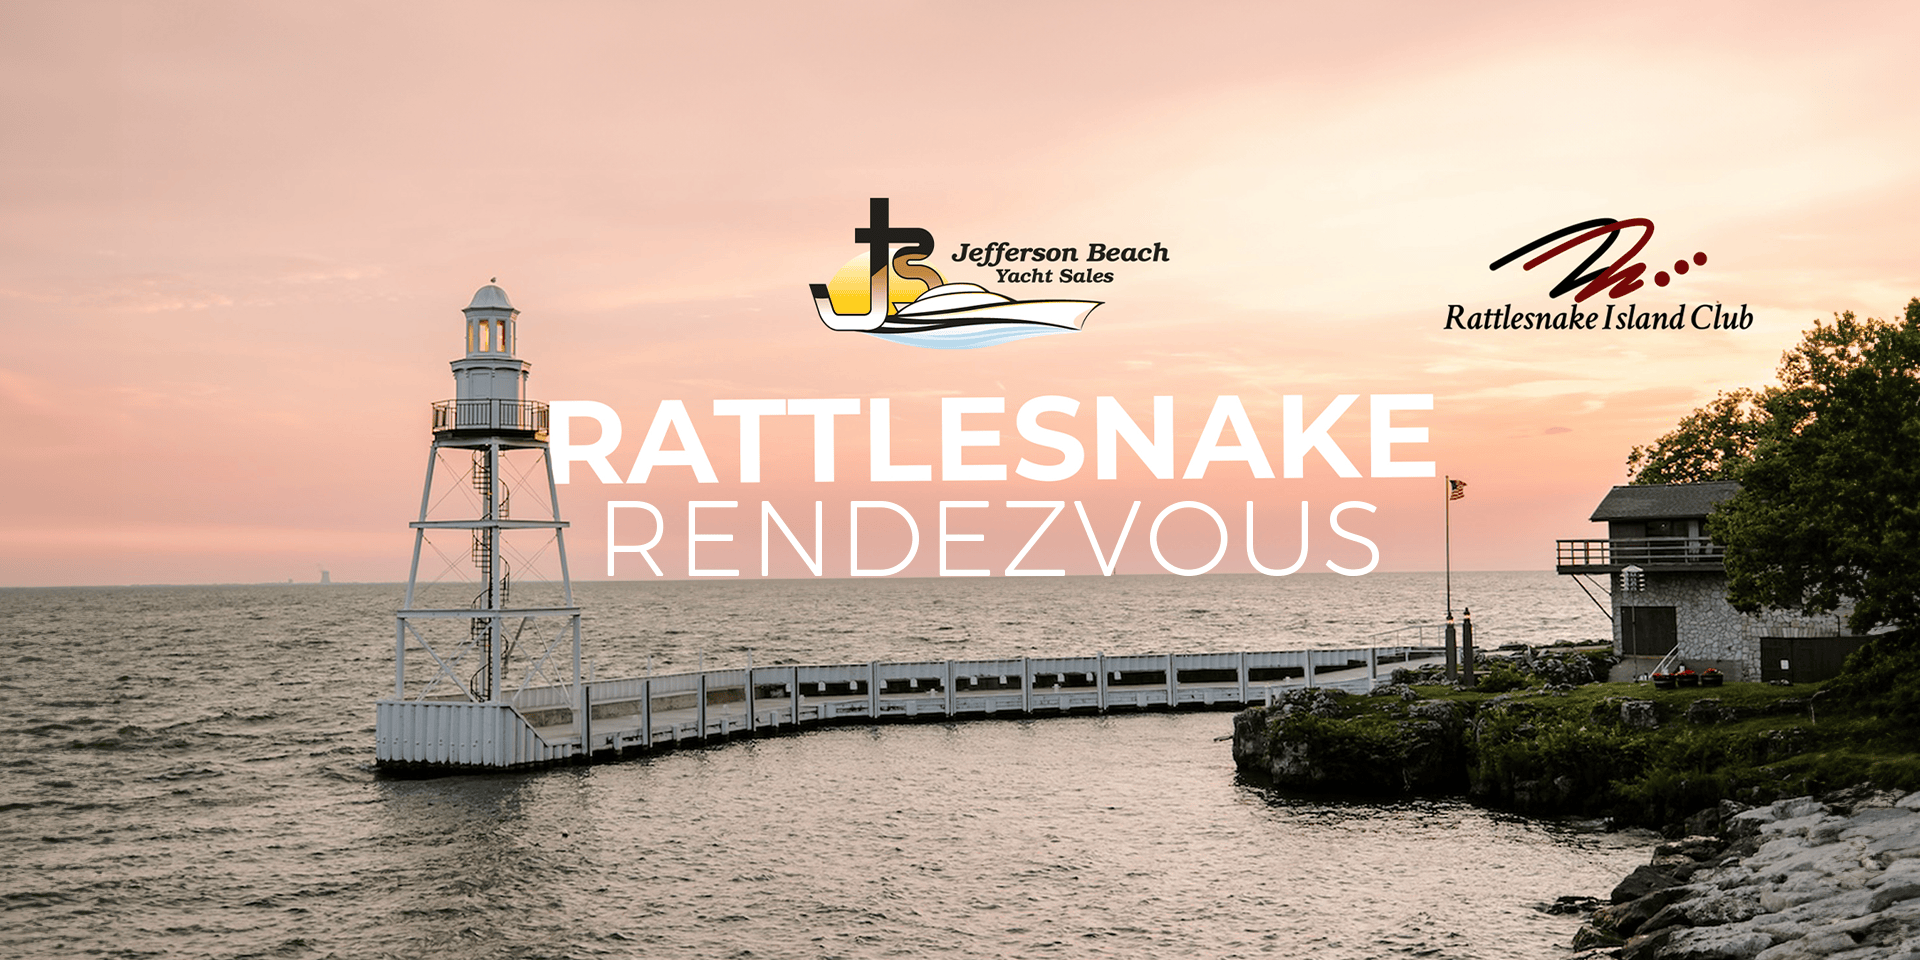 Rattlesnake Rendezvous